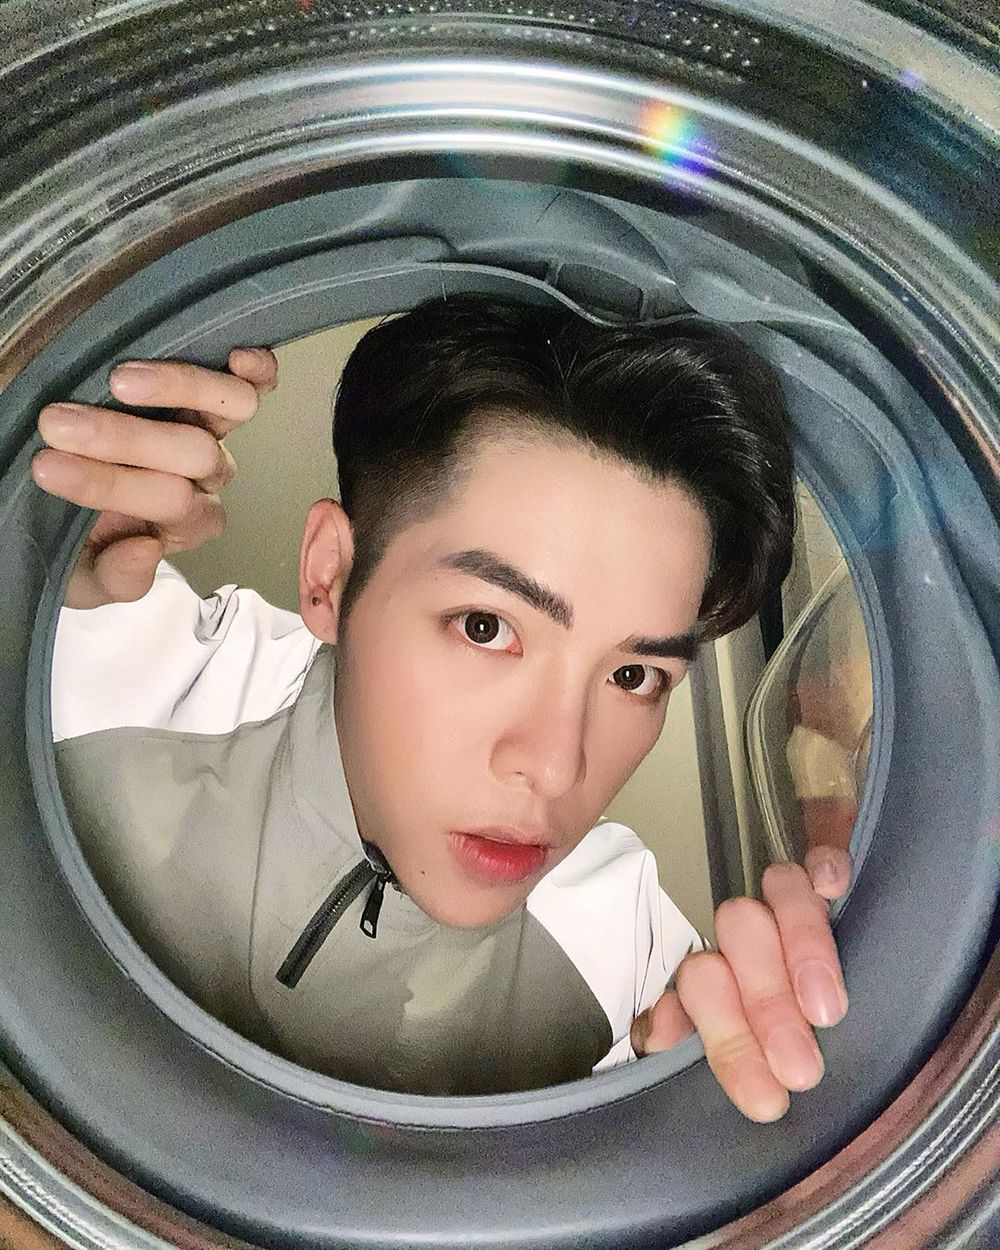  
Hình ảnh chụp trong lồng máy giặt được ca sĩ đăng tải (Ảnh: FBNV)